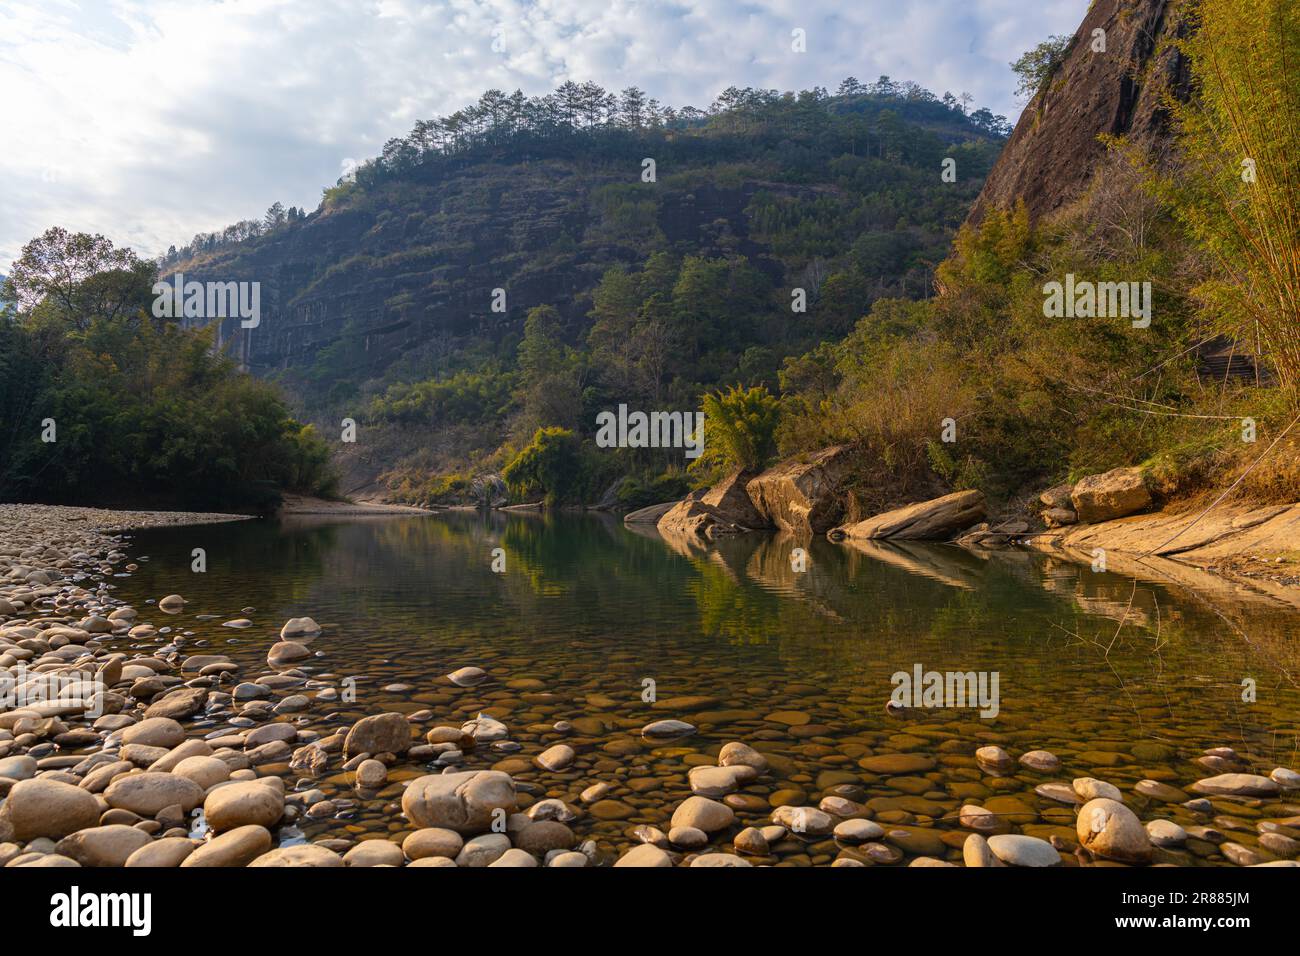 Un boschetto di alberi di bambù e insolite formazioni rocciose sul fiume di nove curve in cina wuyishan nella provincia fujian, copia spazio per il testo Foto Stock